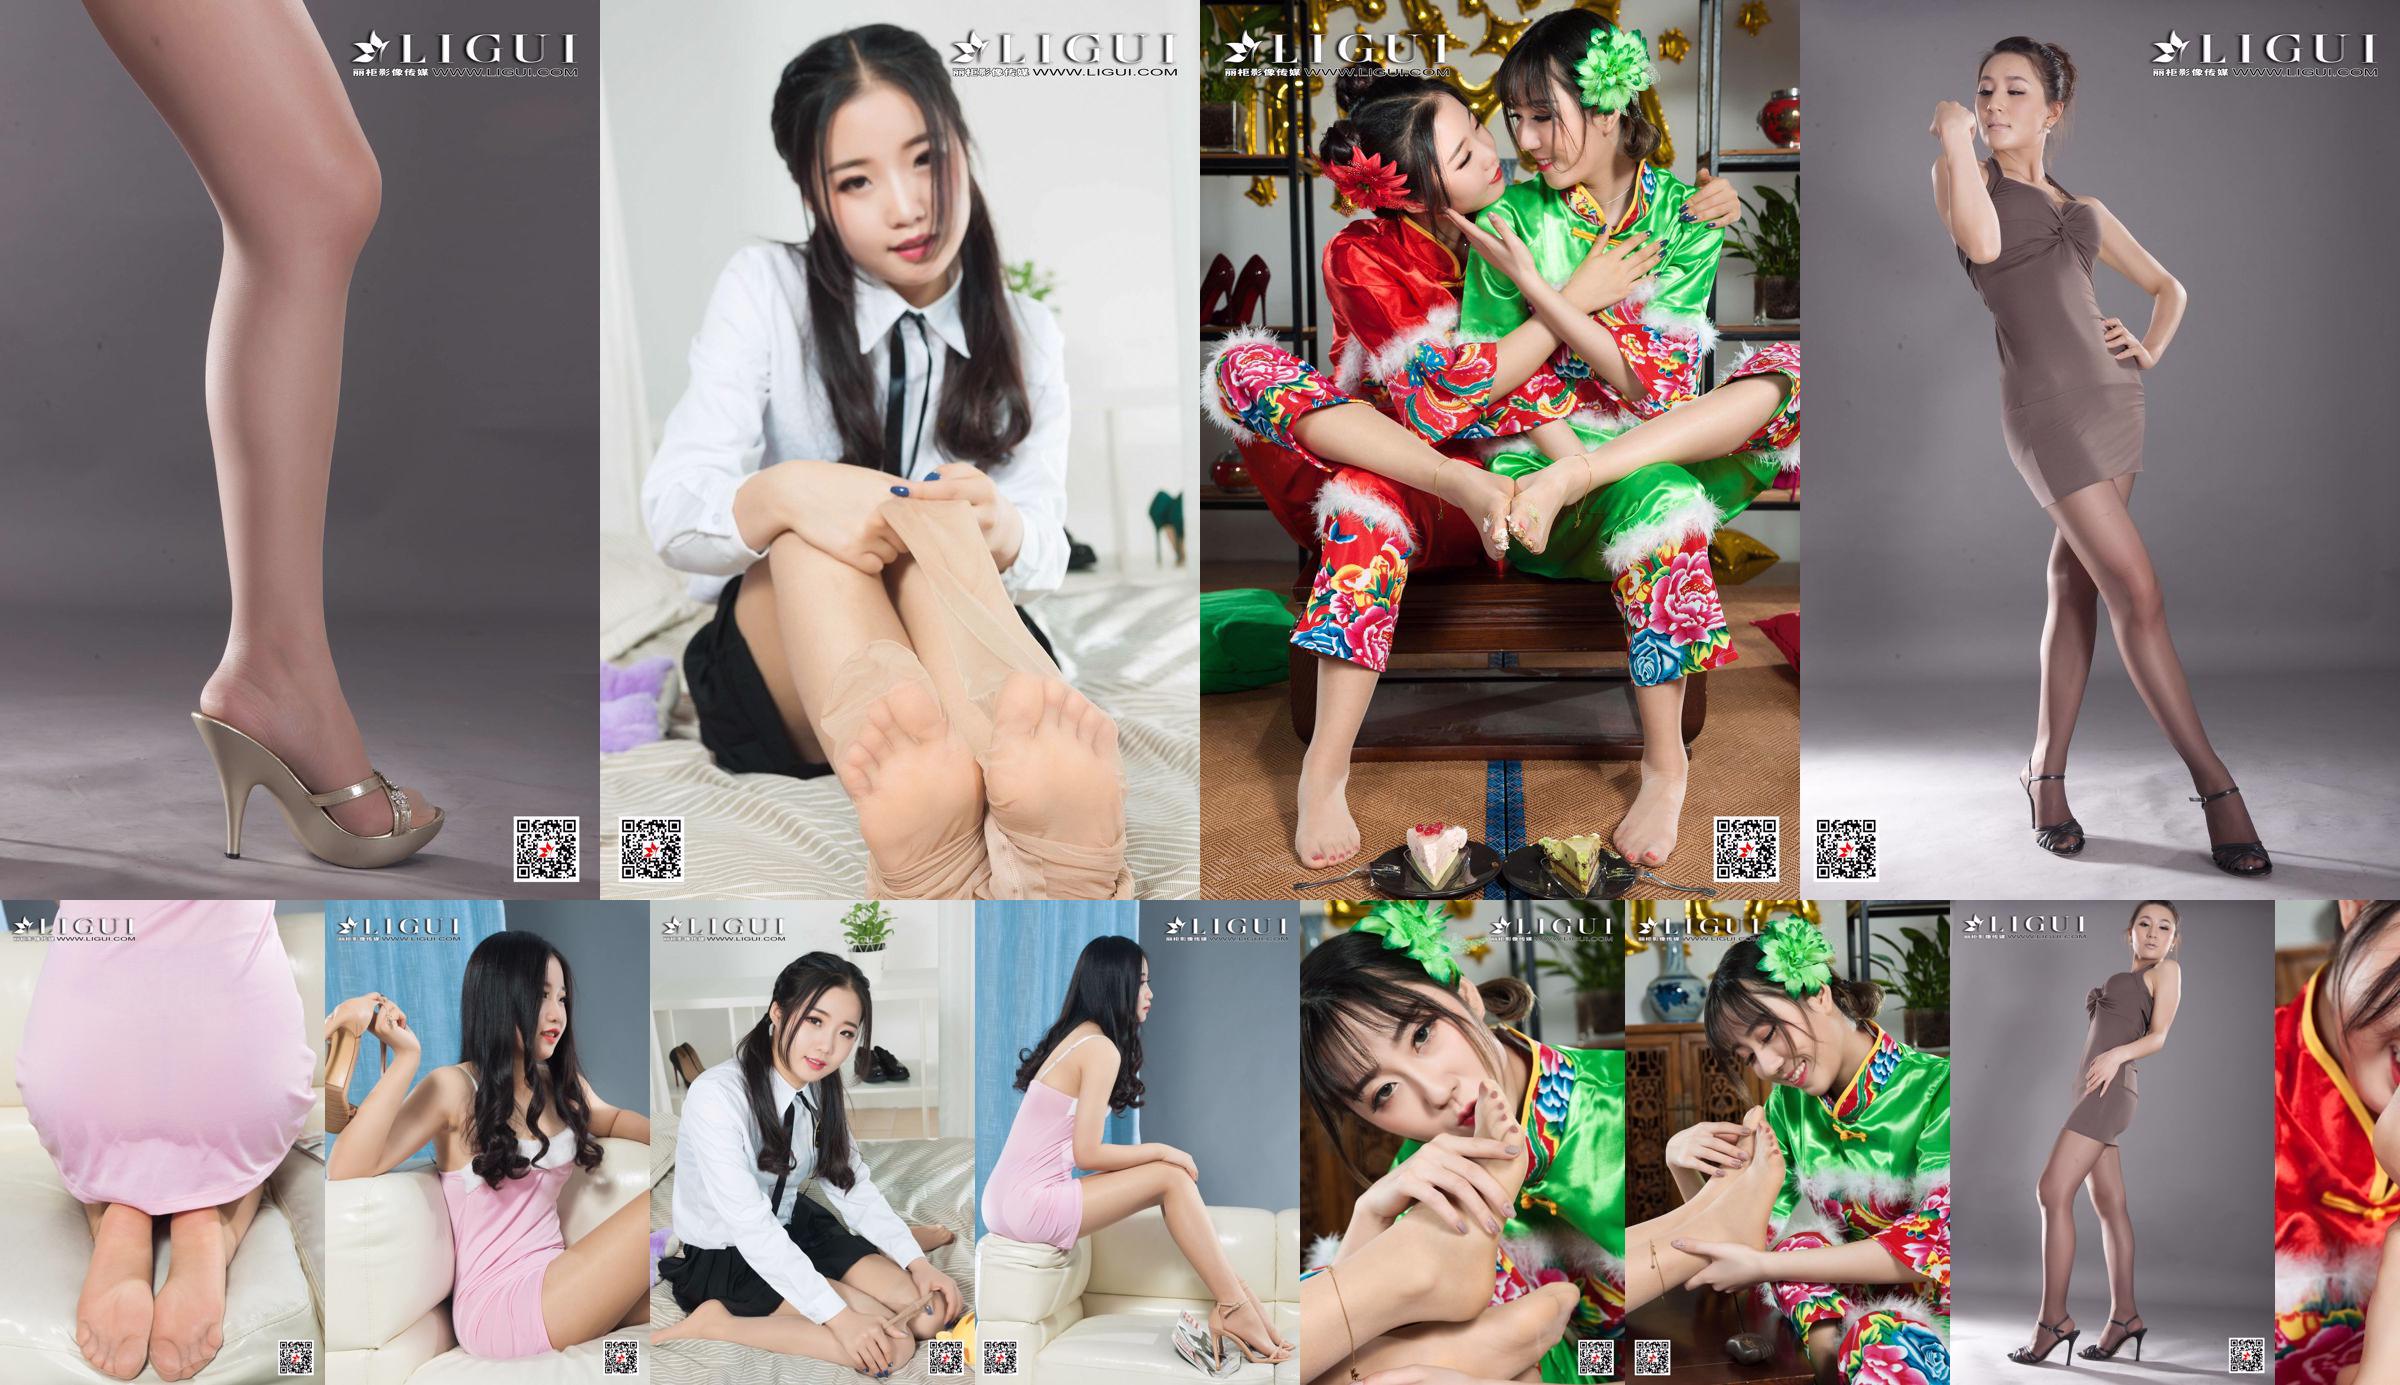 [丽 柜 Ligui] Modella Yuanyuan "Studio Shot Beauty" No.34d073 Pagina 1